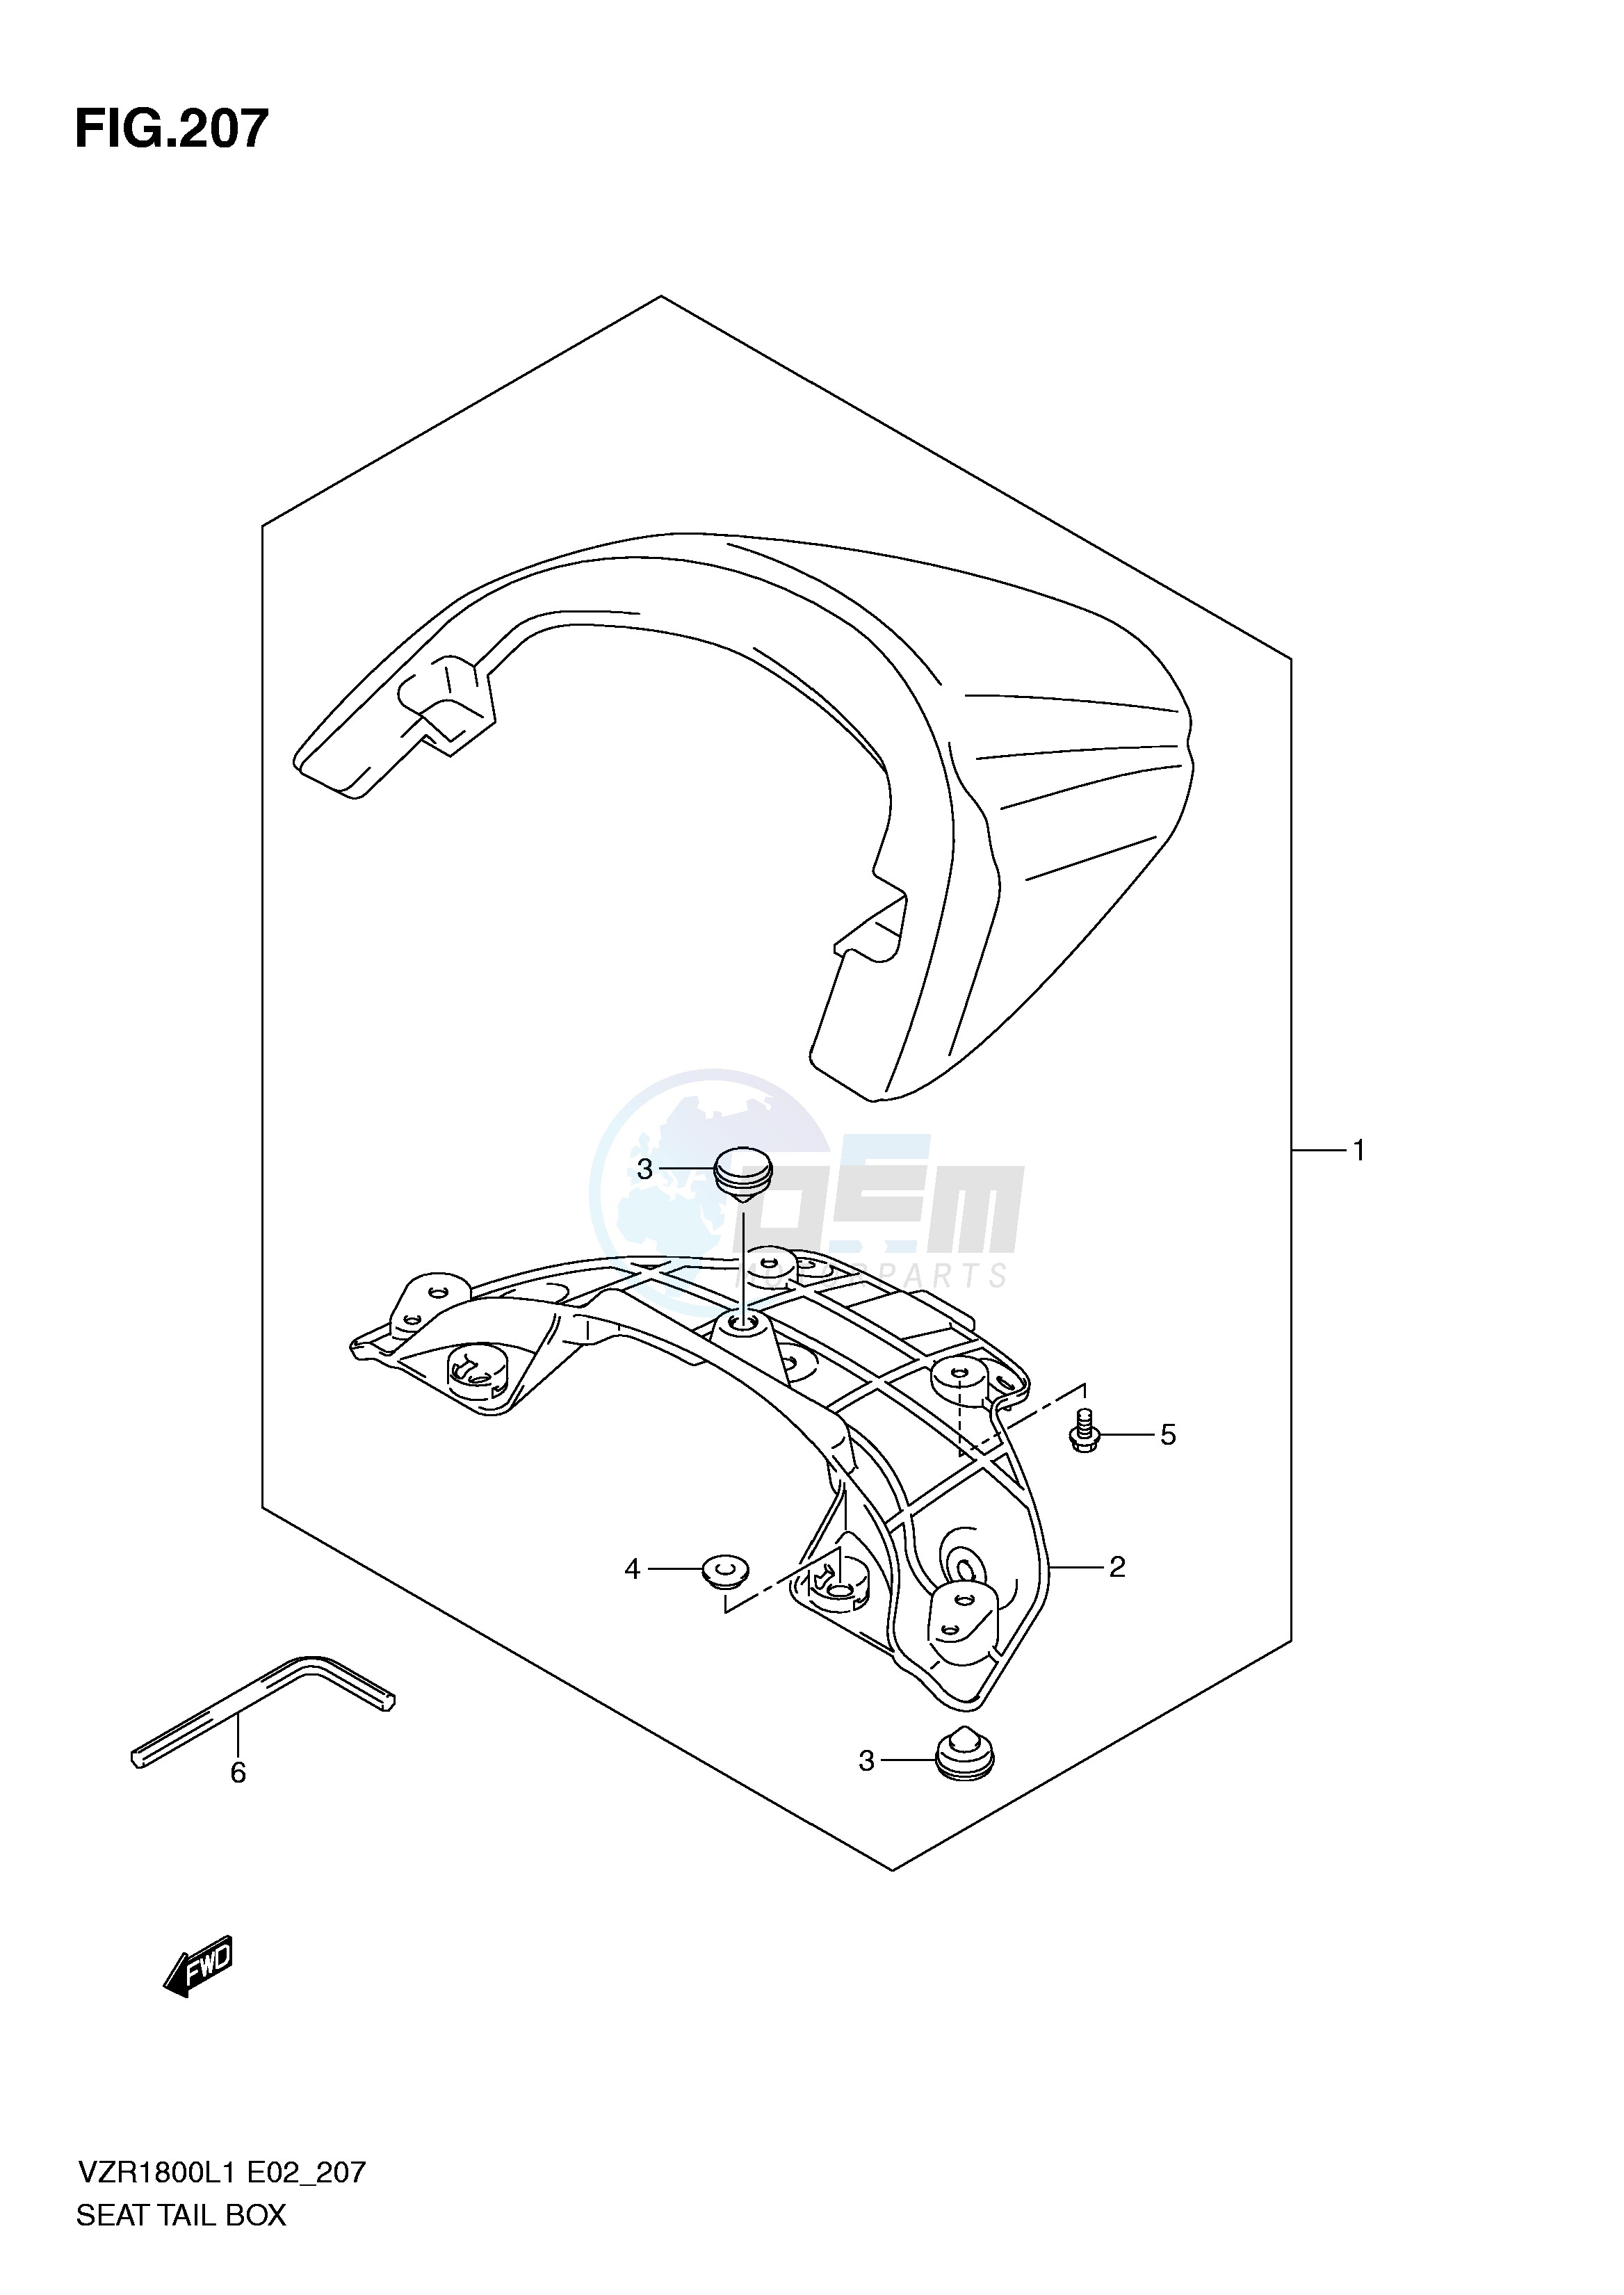 SEAT TAIL BOX (VZR1800ZL1 E24) blueprint